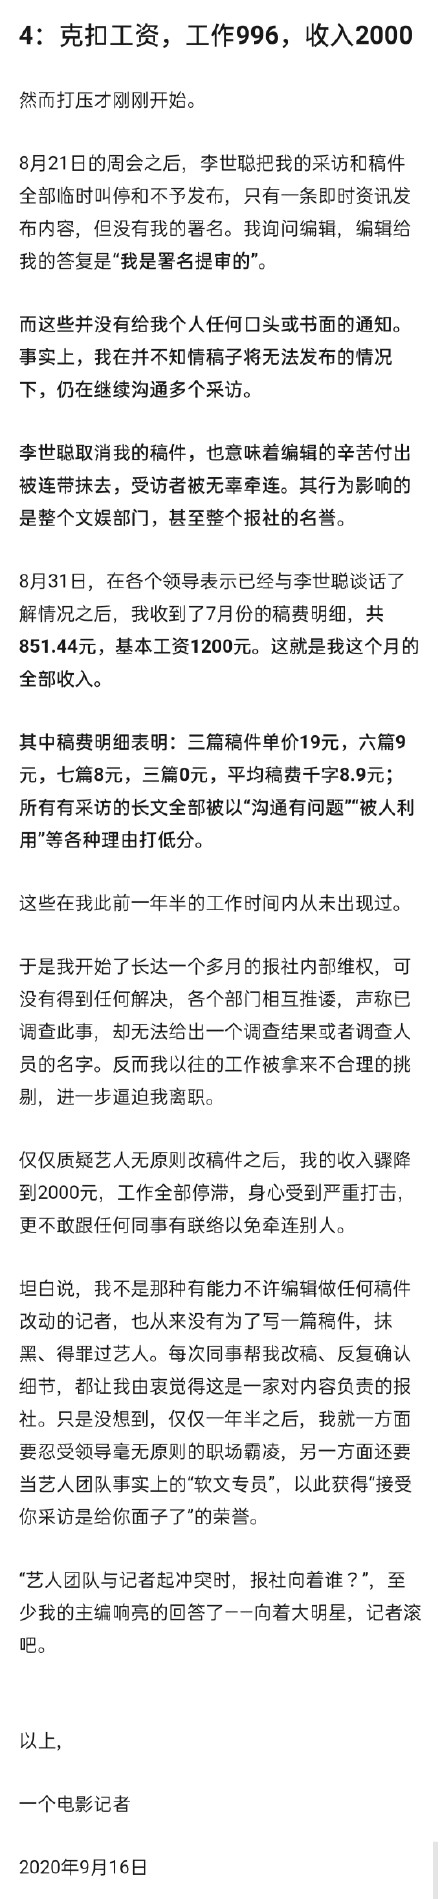 记者透露因采访徐峥后被开除!更多细节真相曝光